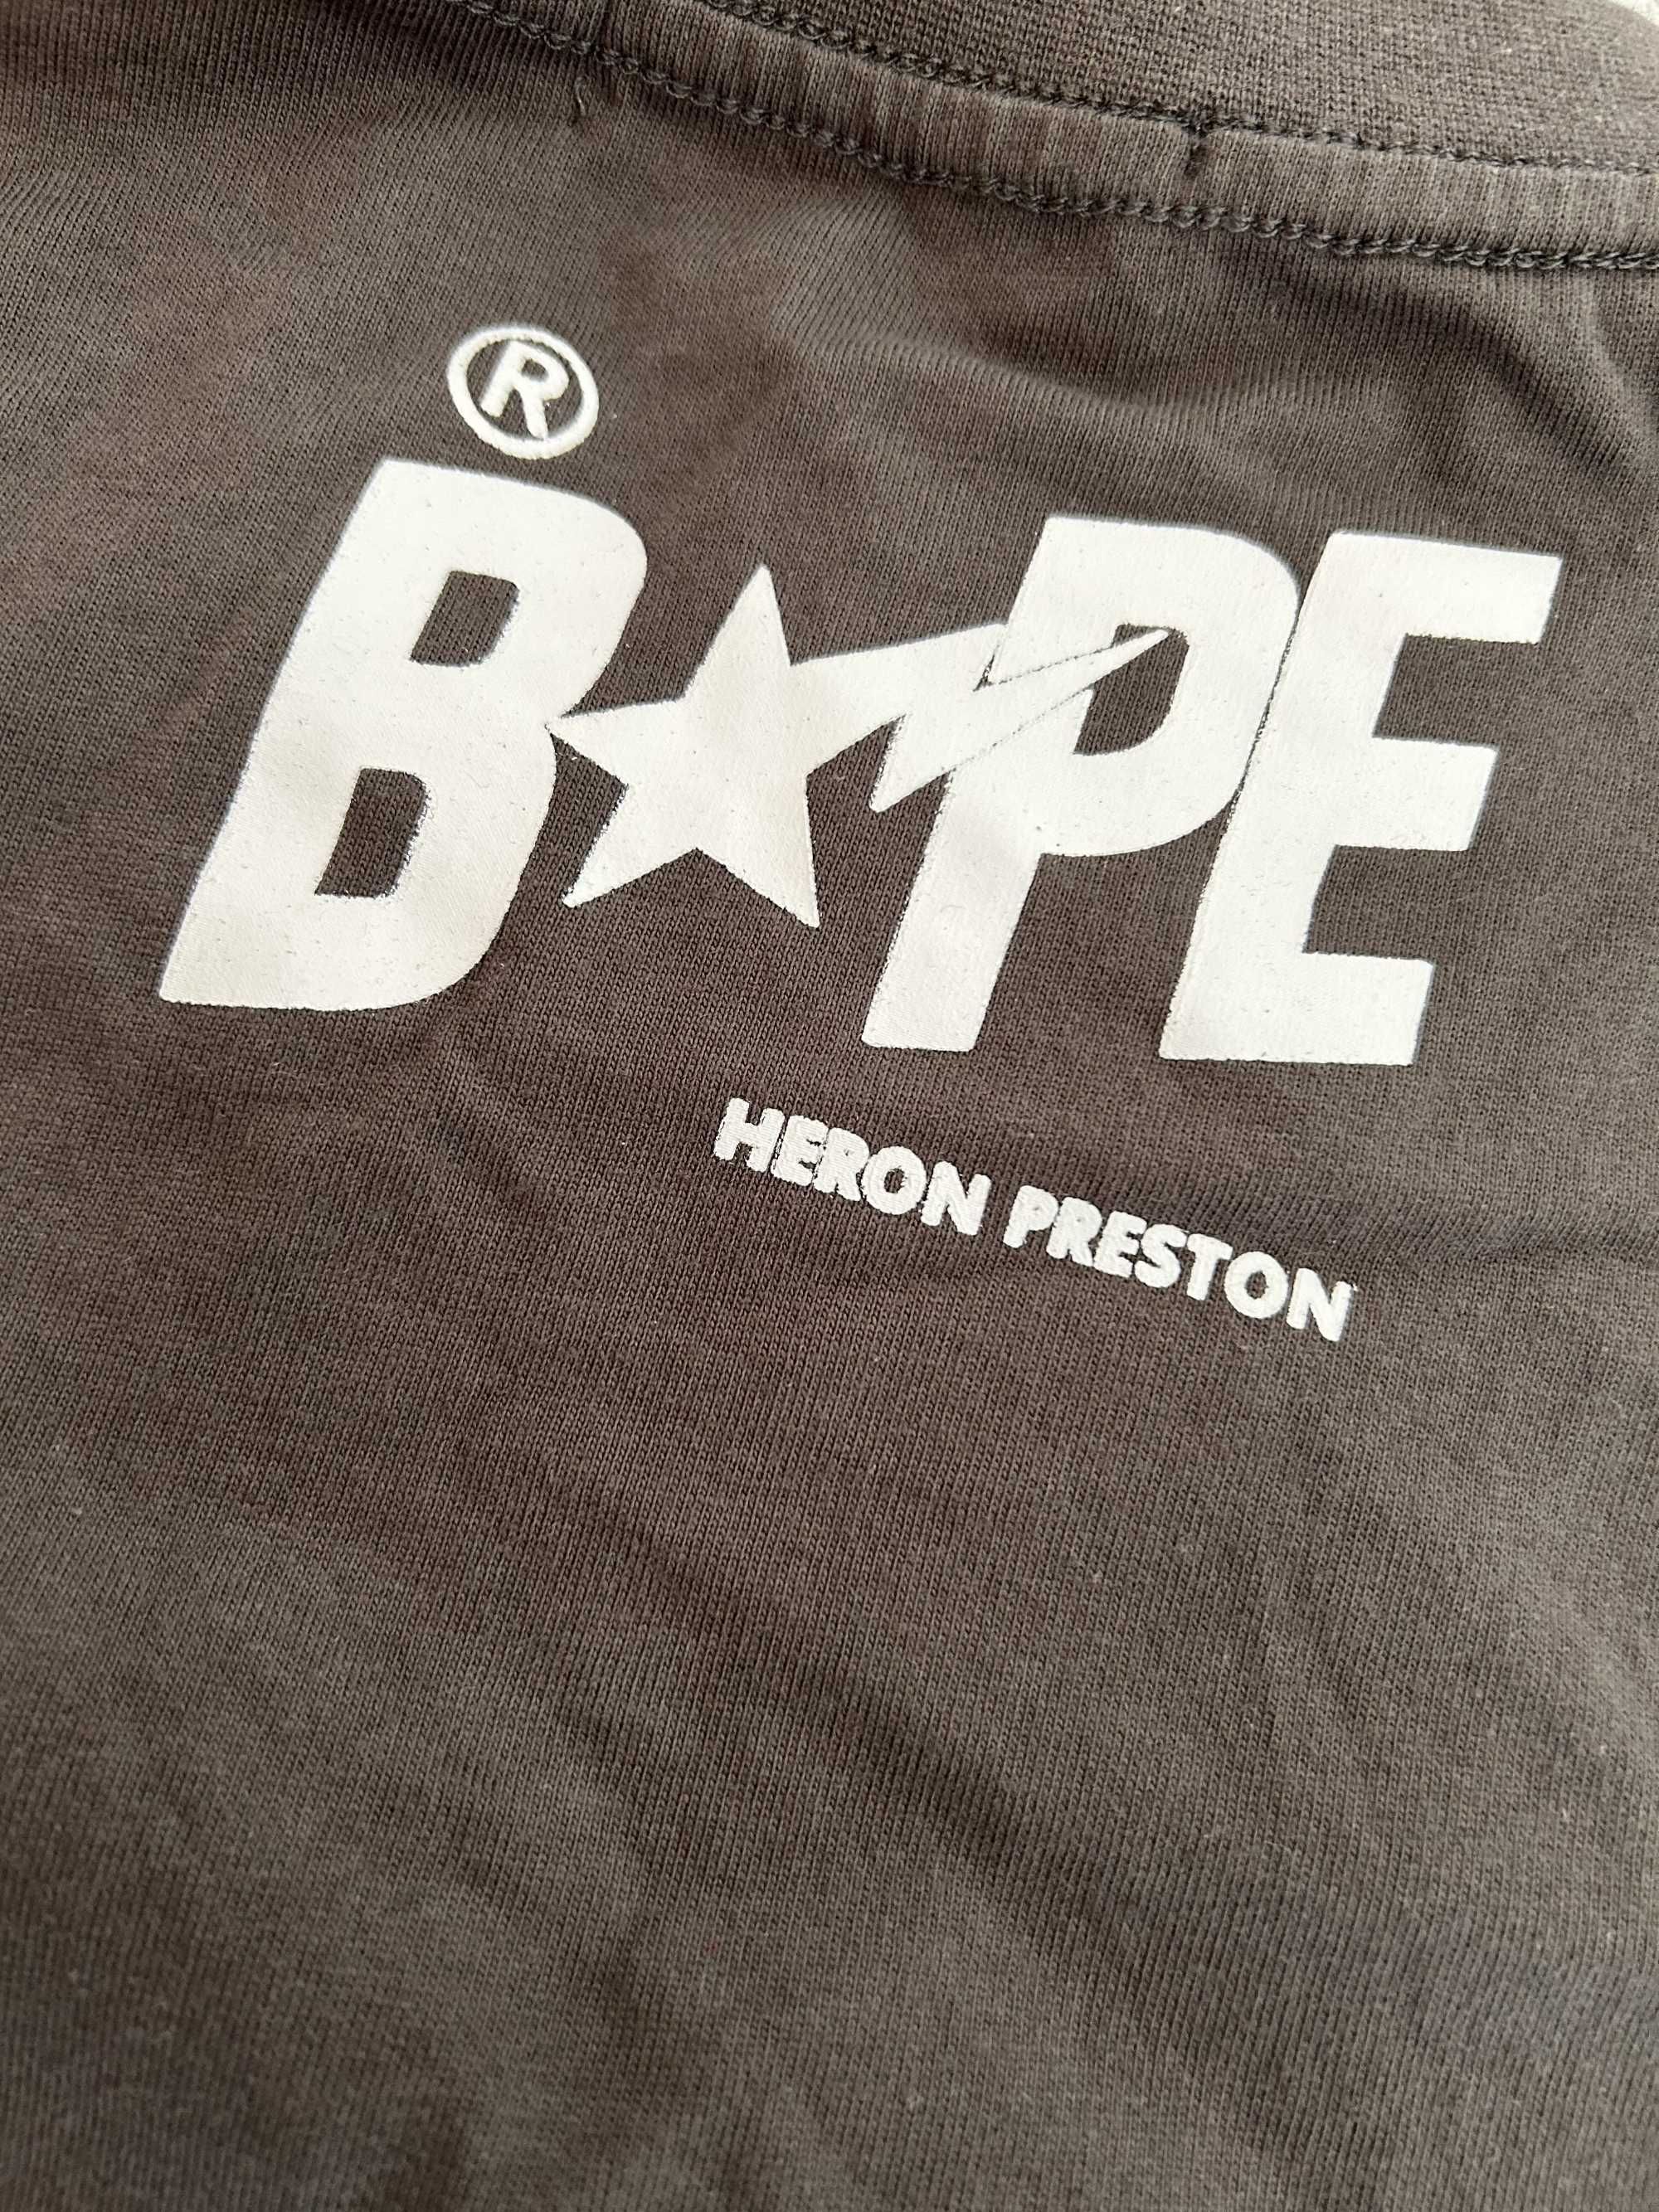 BAPE x Heron Preston